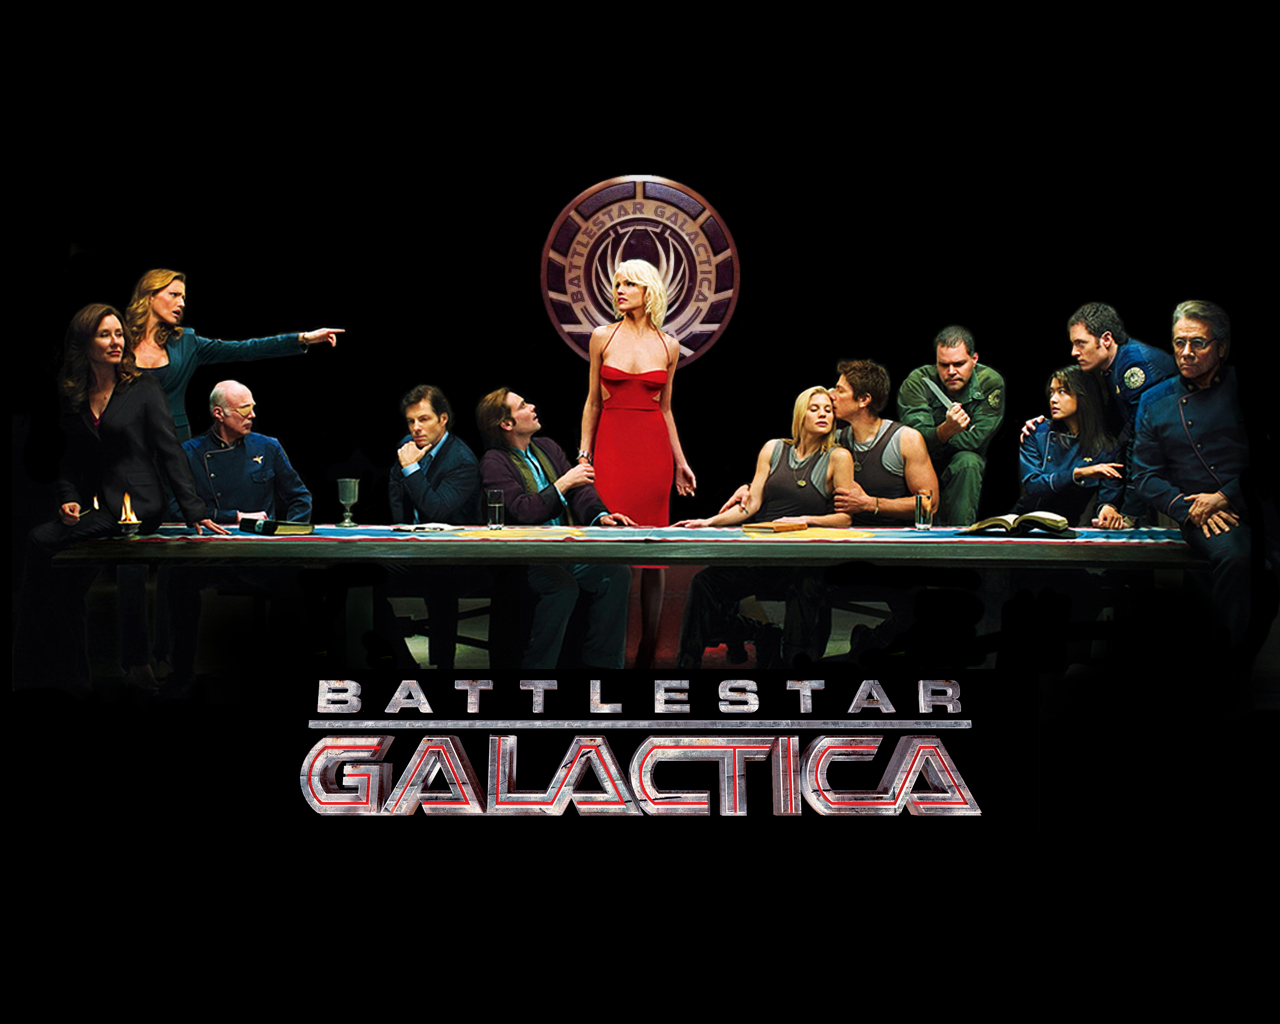 battlestar-galactica-last-supper-2008.jpg